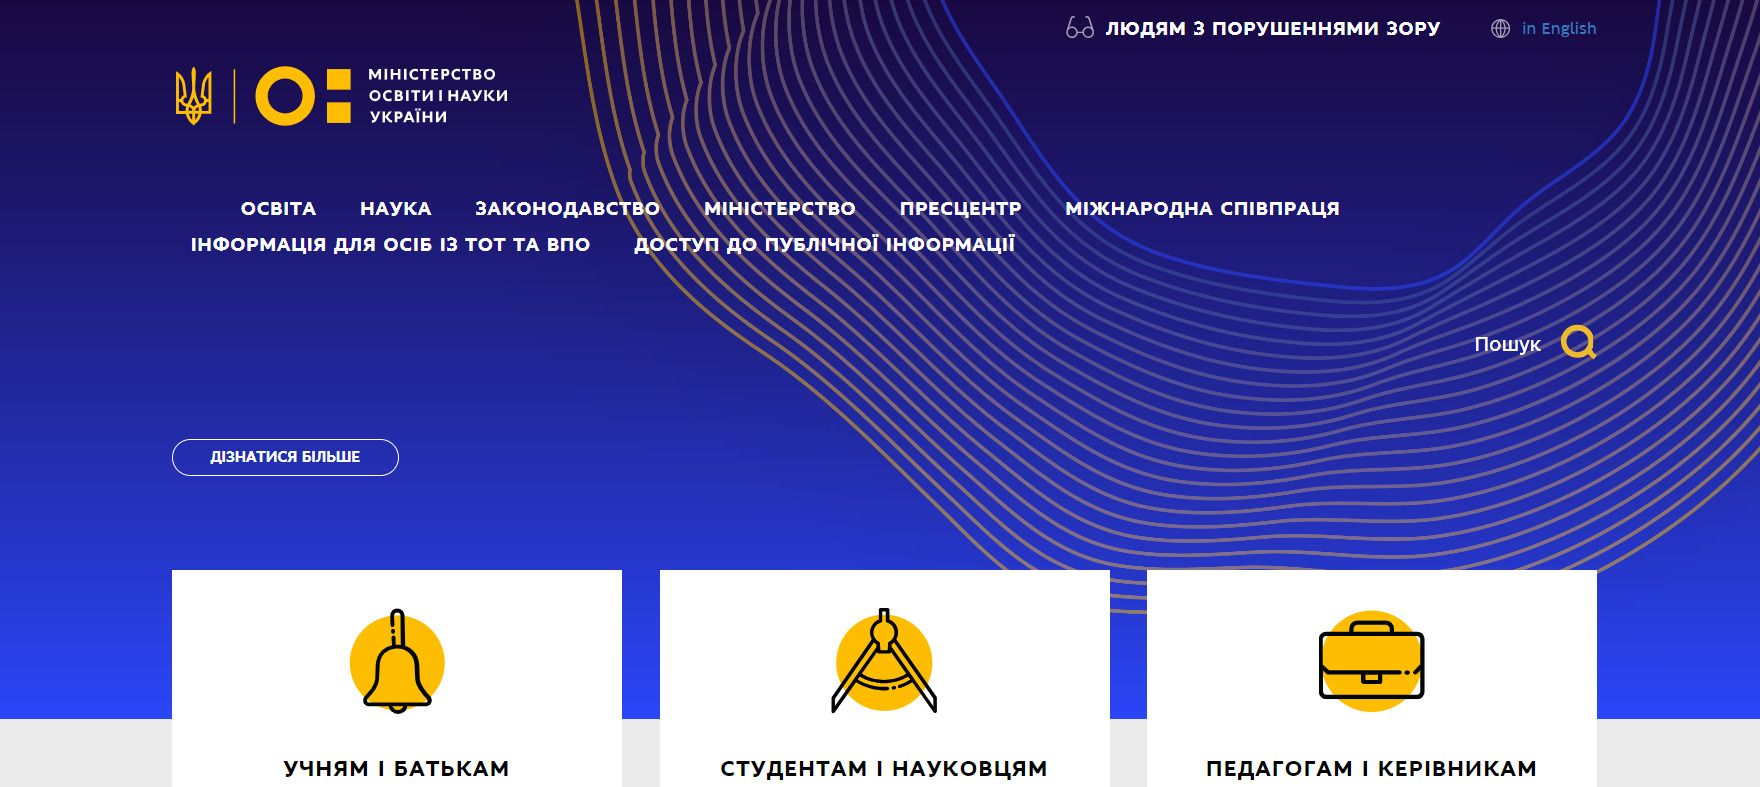 Хакерська атака на сайт Міносвіти - вебресурс відновив роботу станом на 8 лютого 